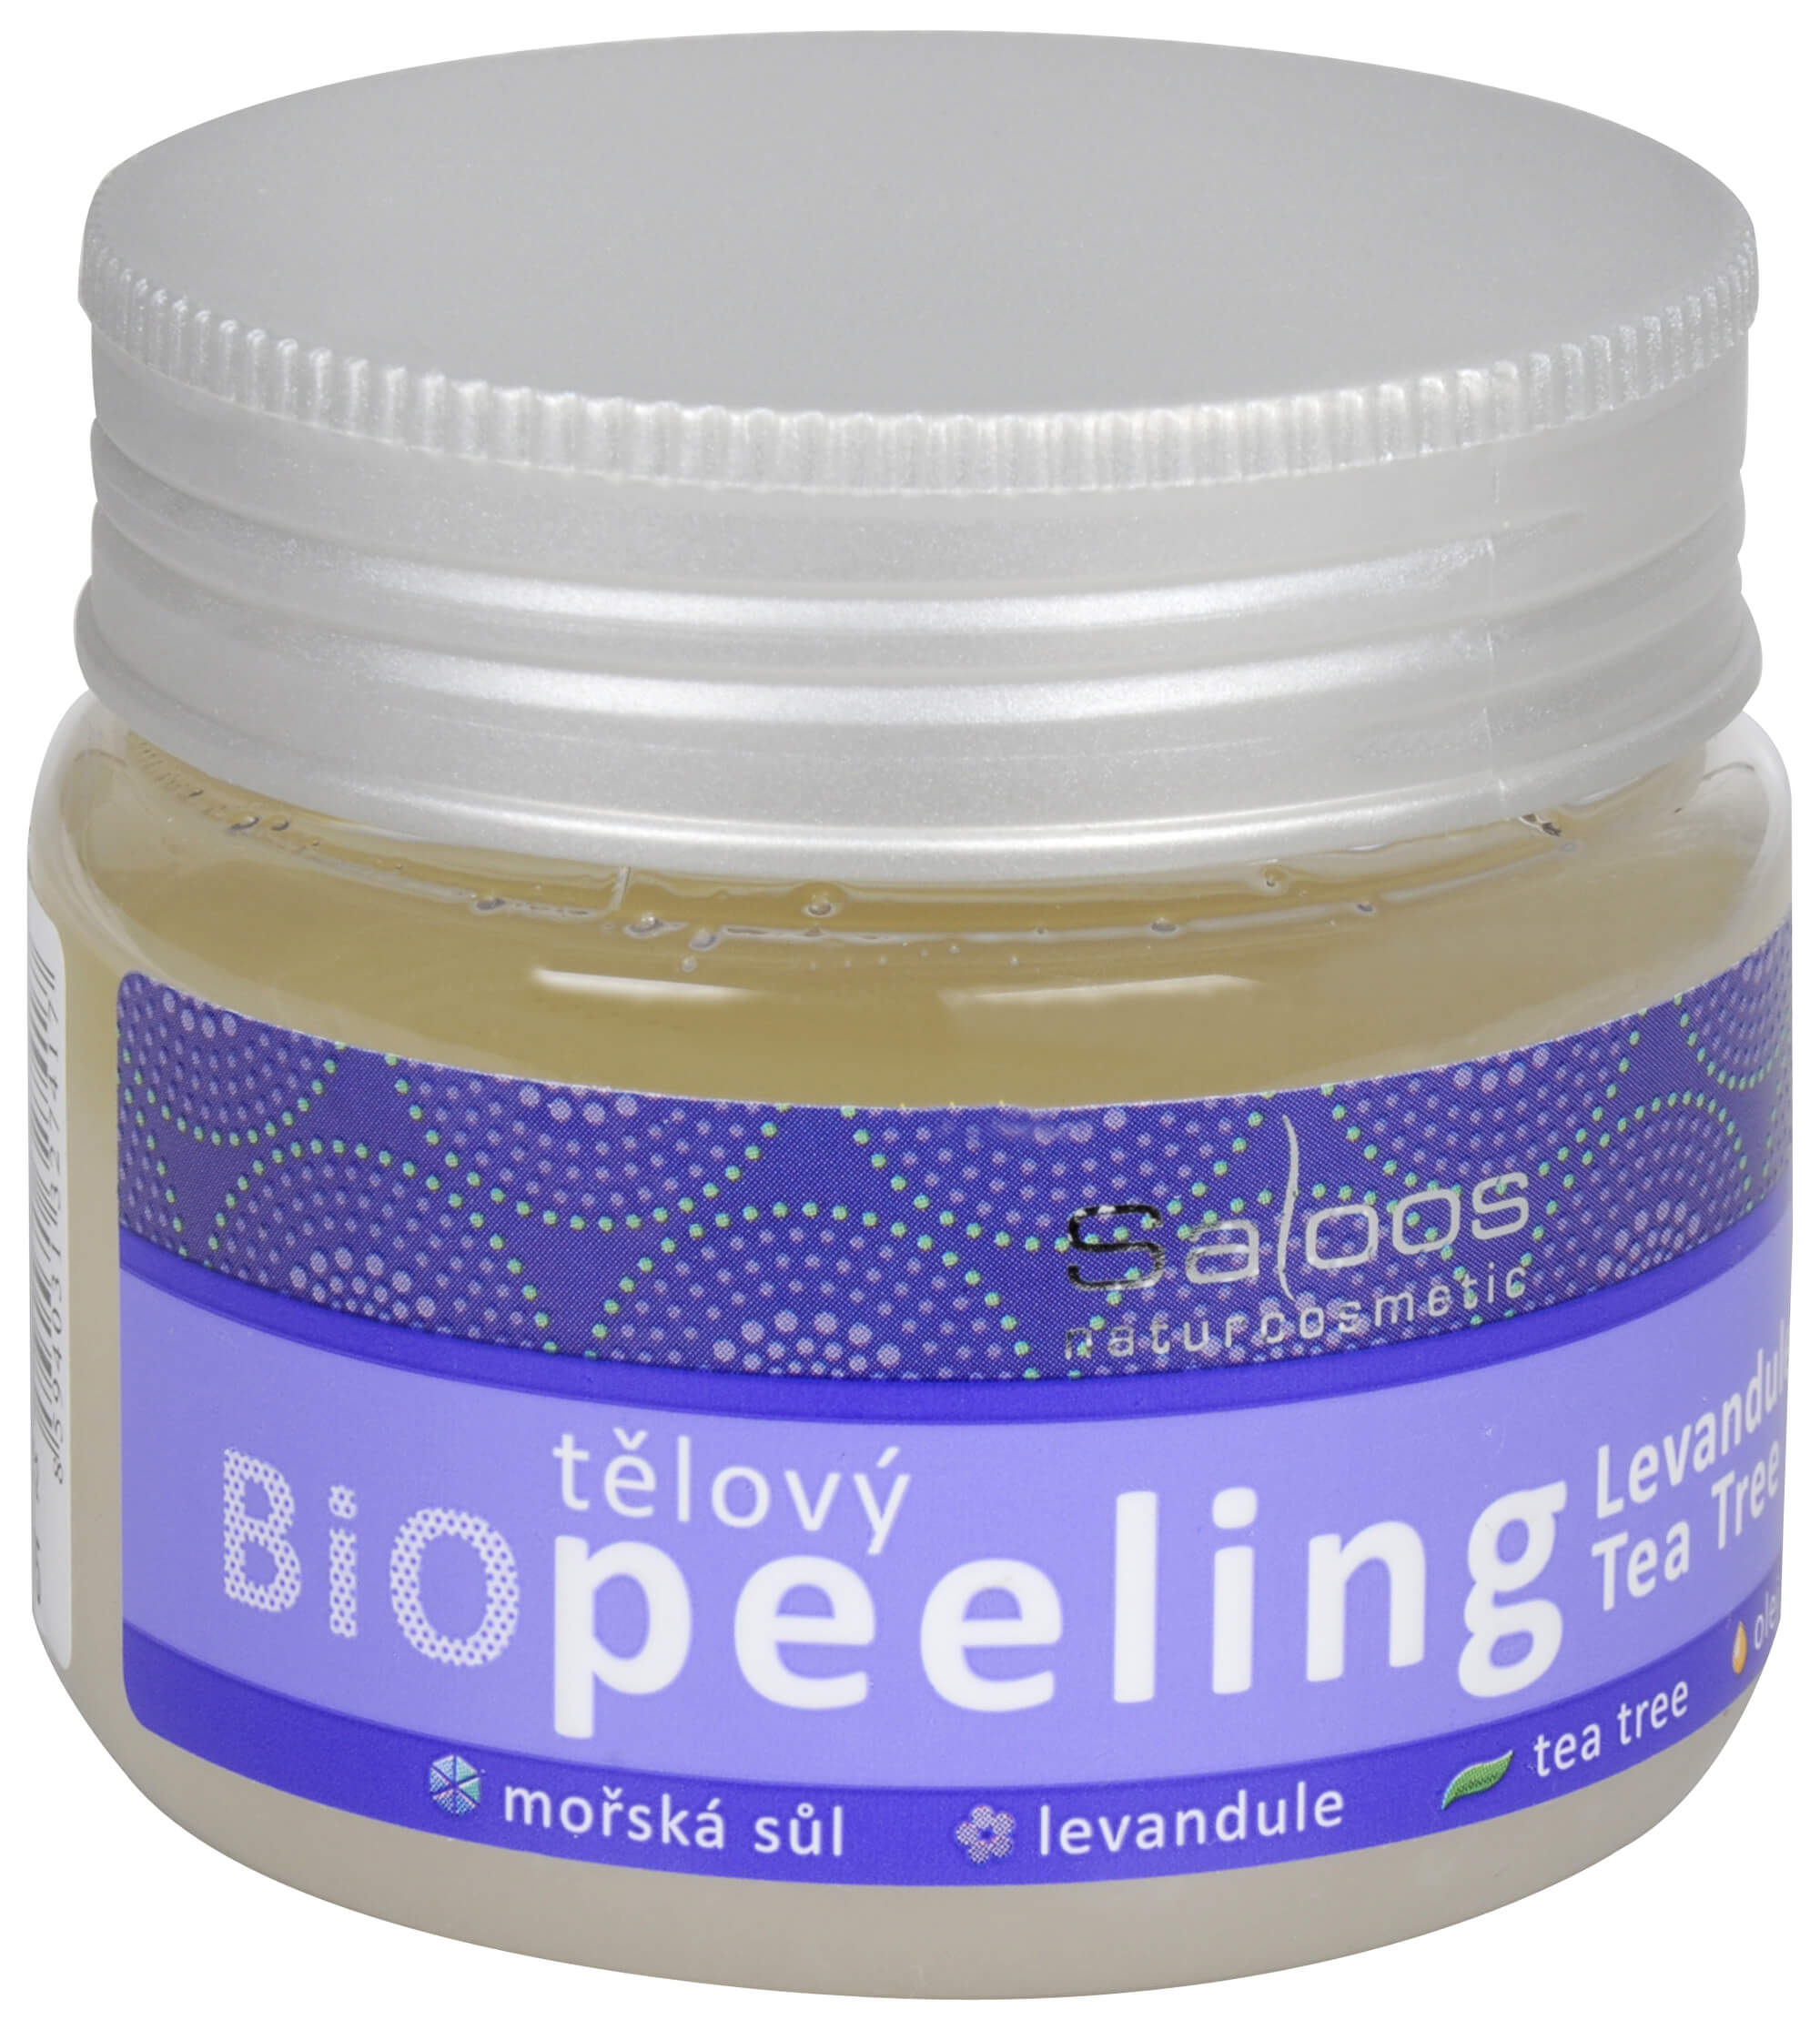 Zobrazit detail výrobku Saloos Bio Tělový peeling - Levandule - Tea tree 140 ml + 2 měsíce na vrácení zboží